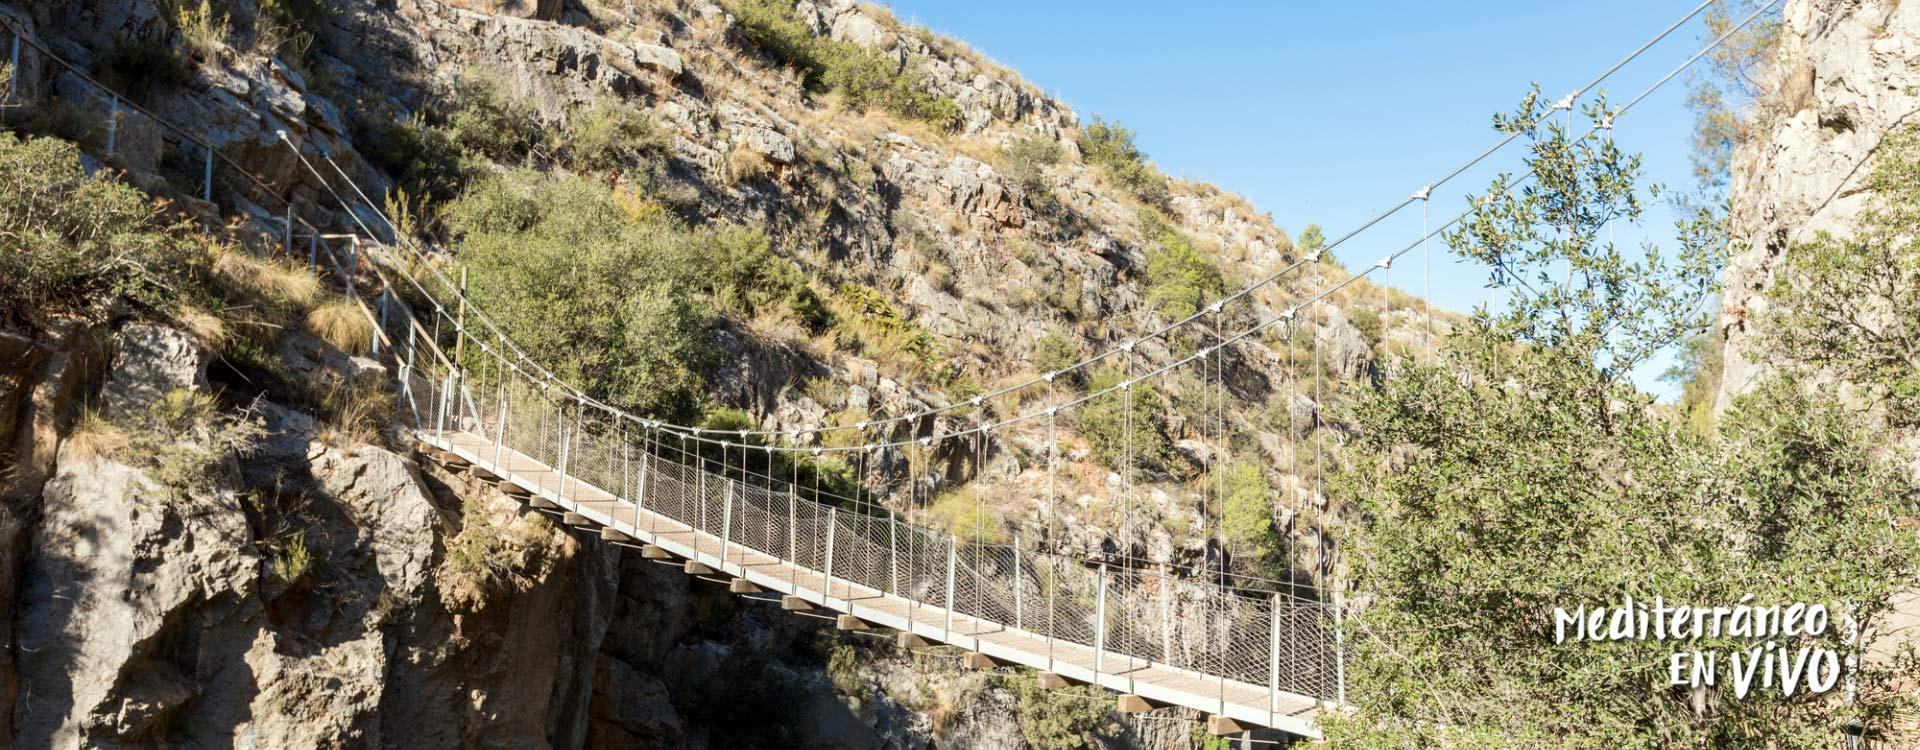 Puente colgante para senderismo en un entorno verde en la Comunidad Valenciana